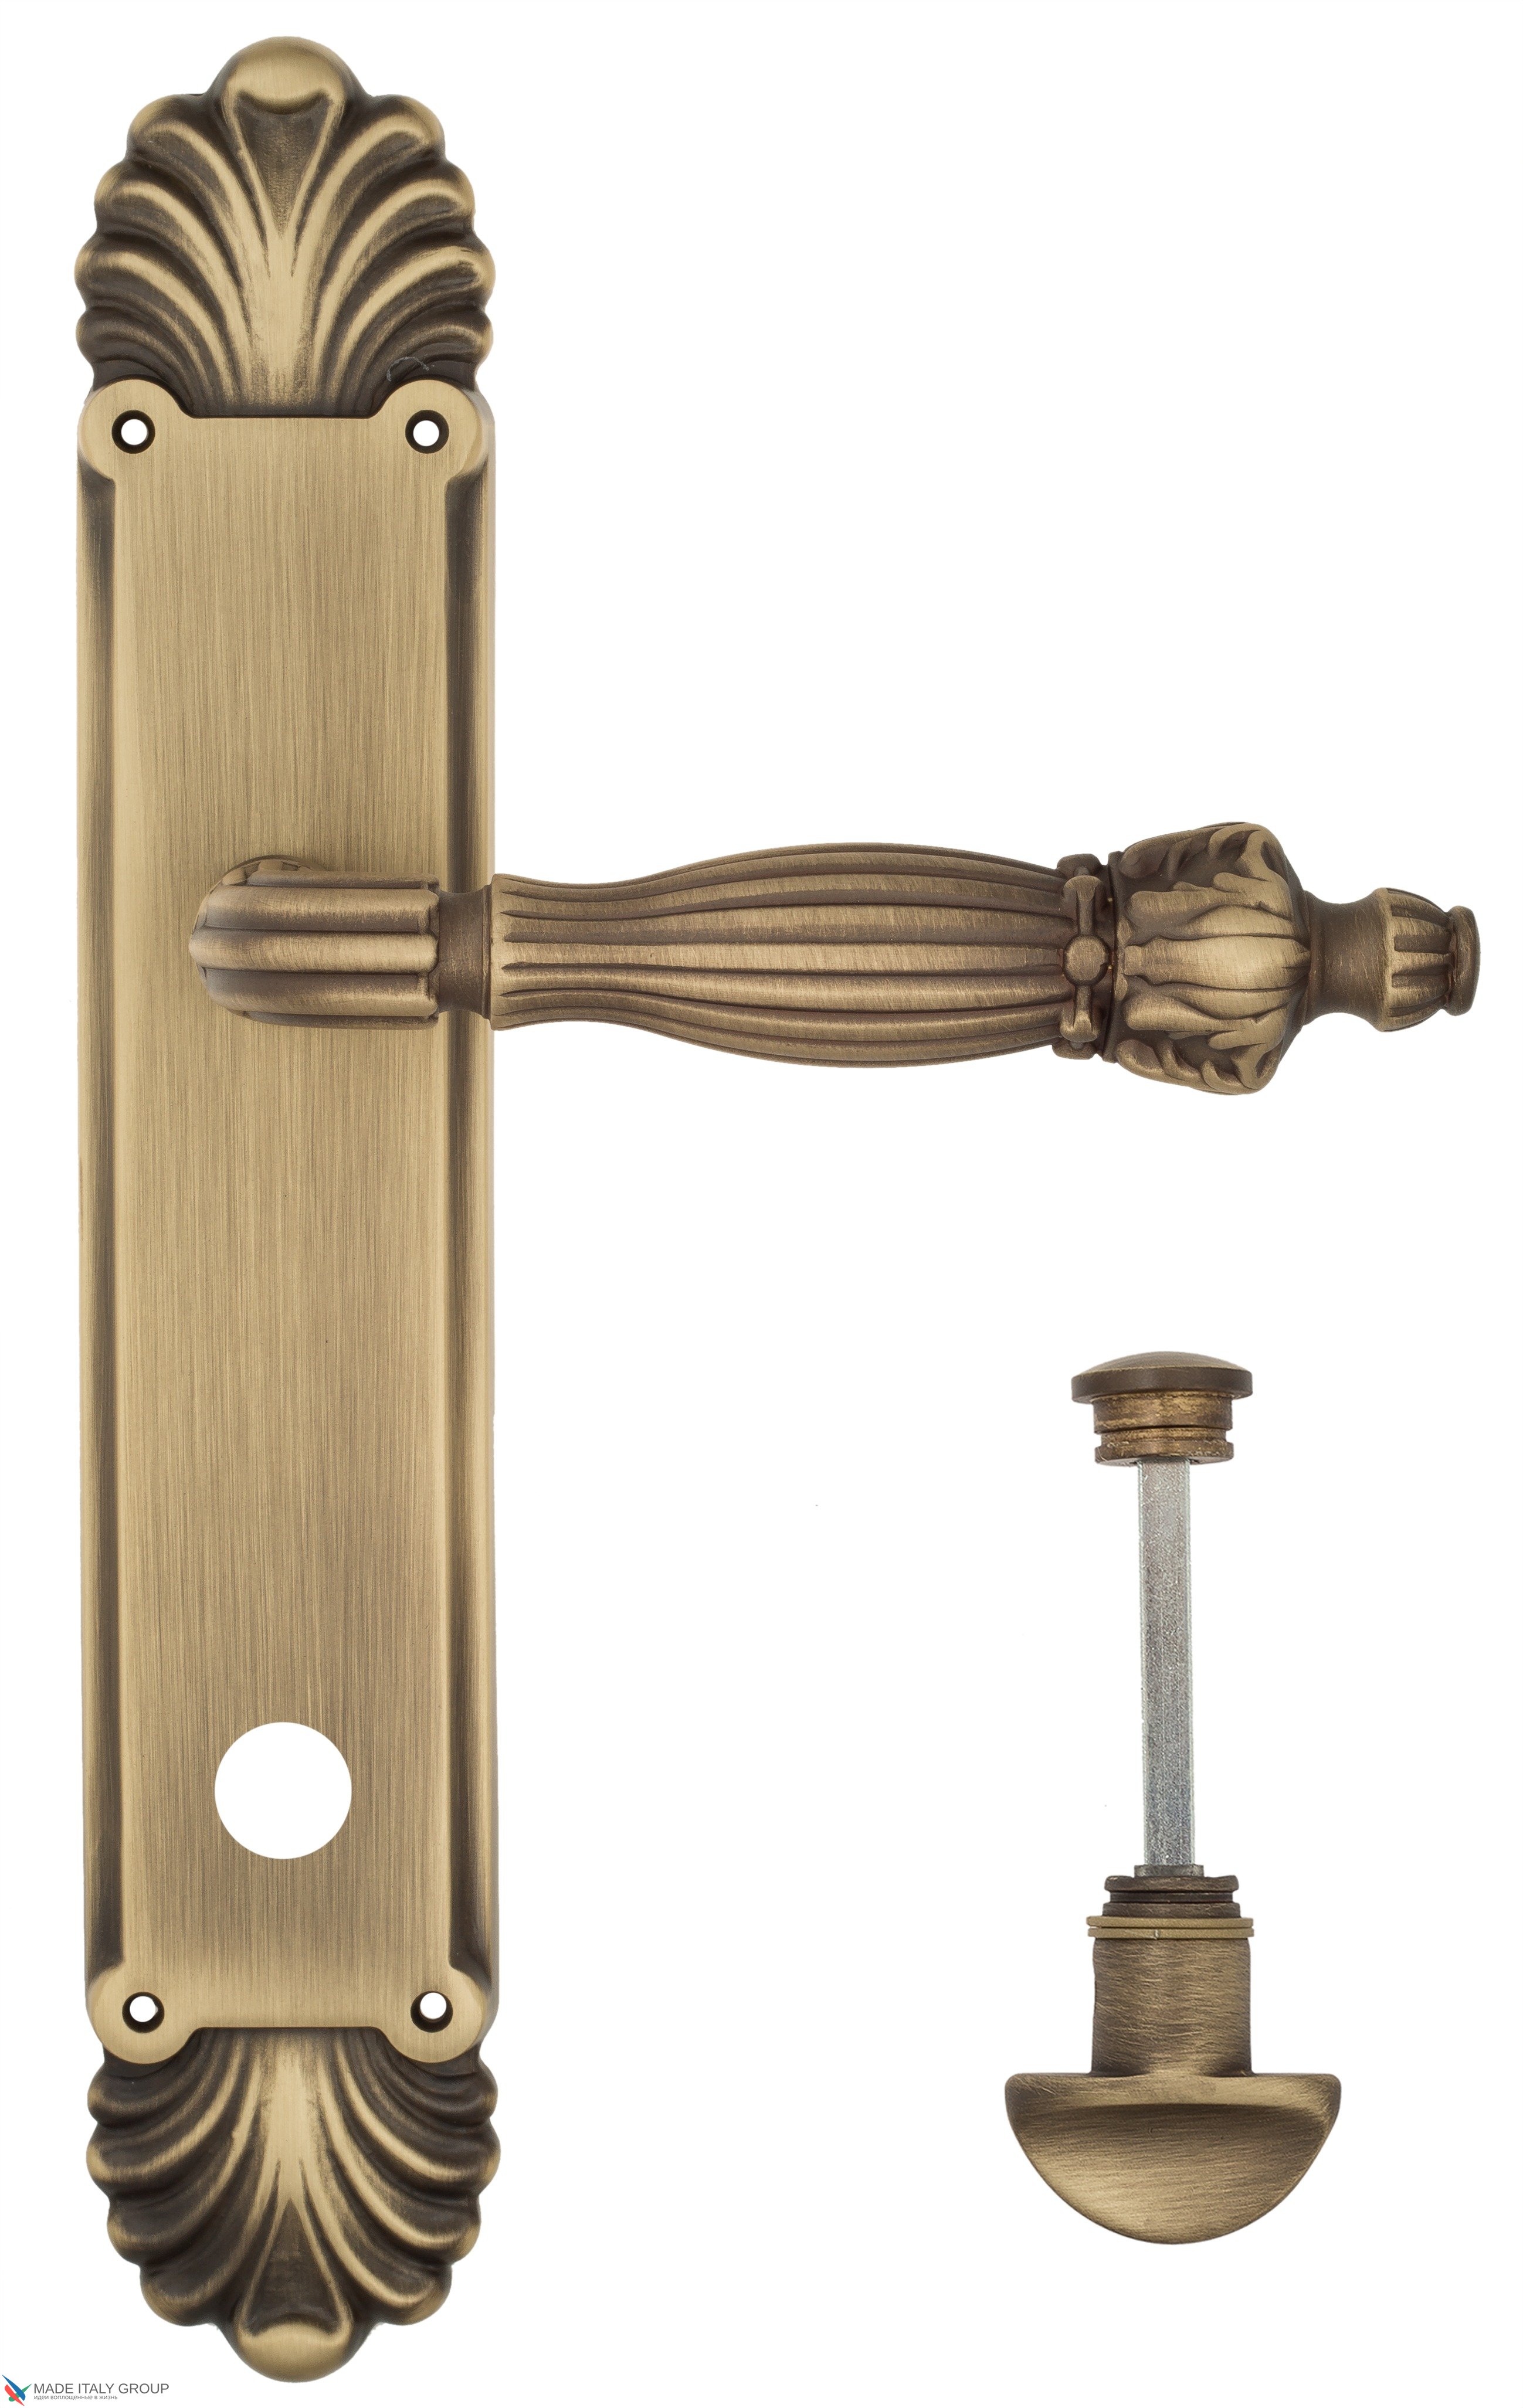 Дверная ручка Venezia "OLIMPO" WC-2 на планке PL87 матовая бронза